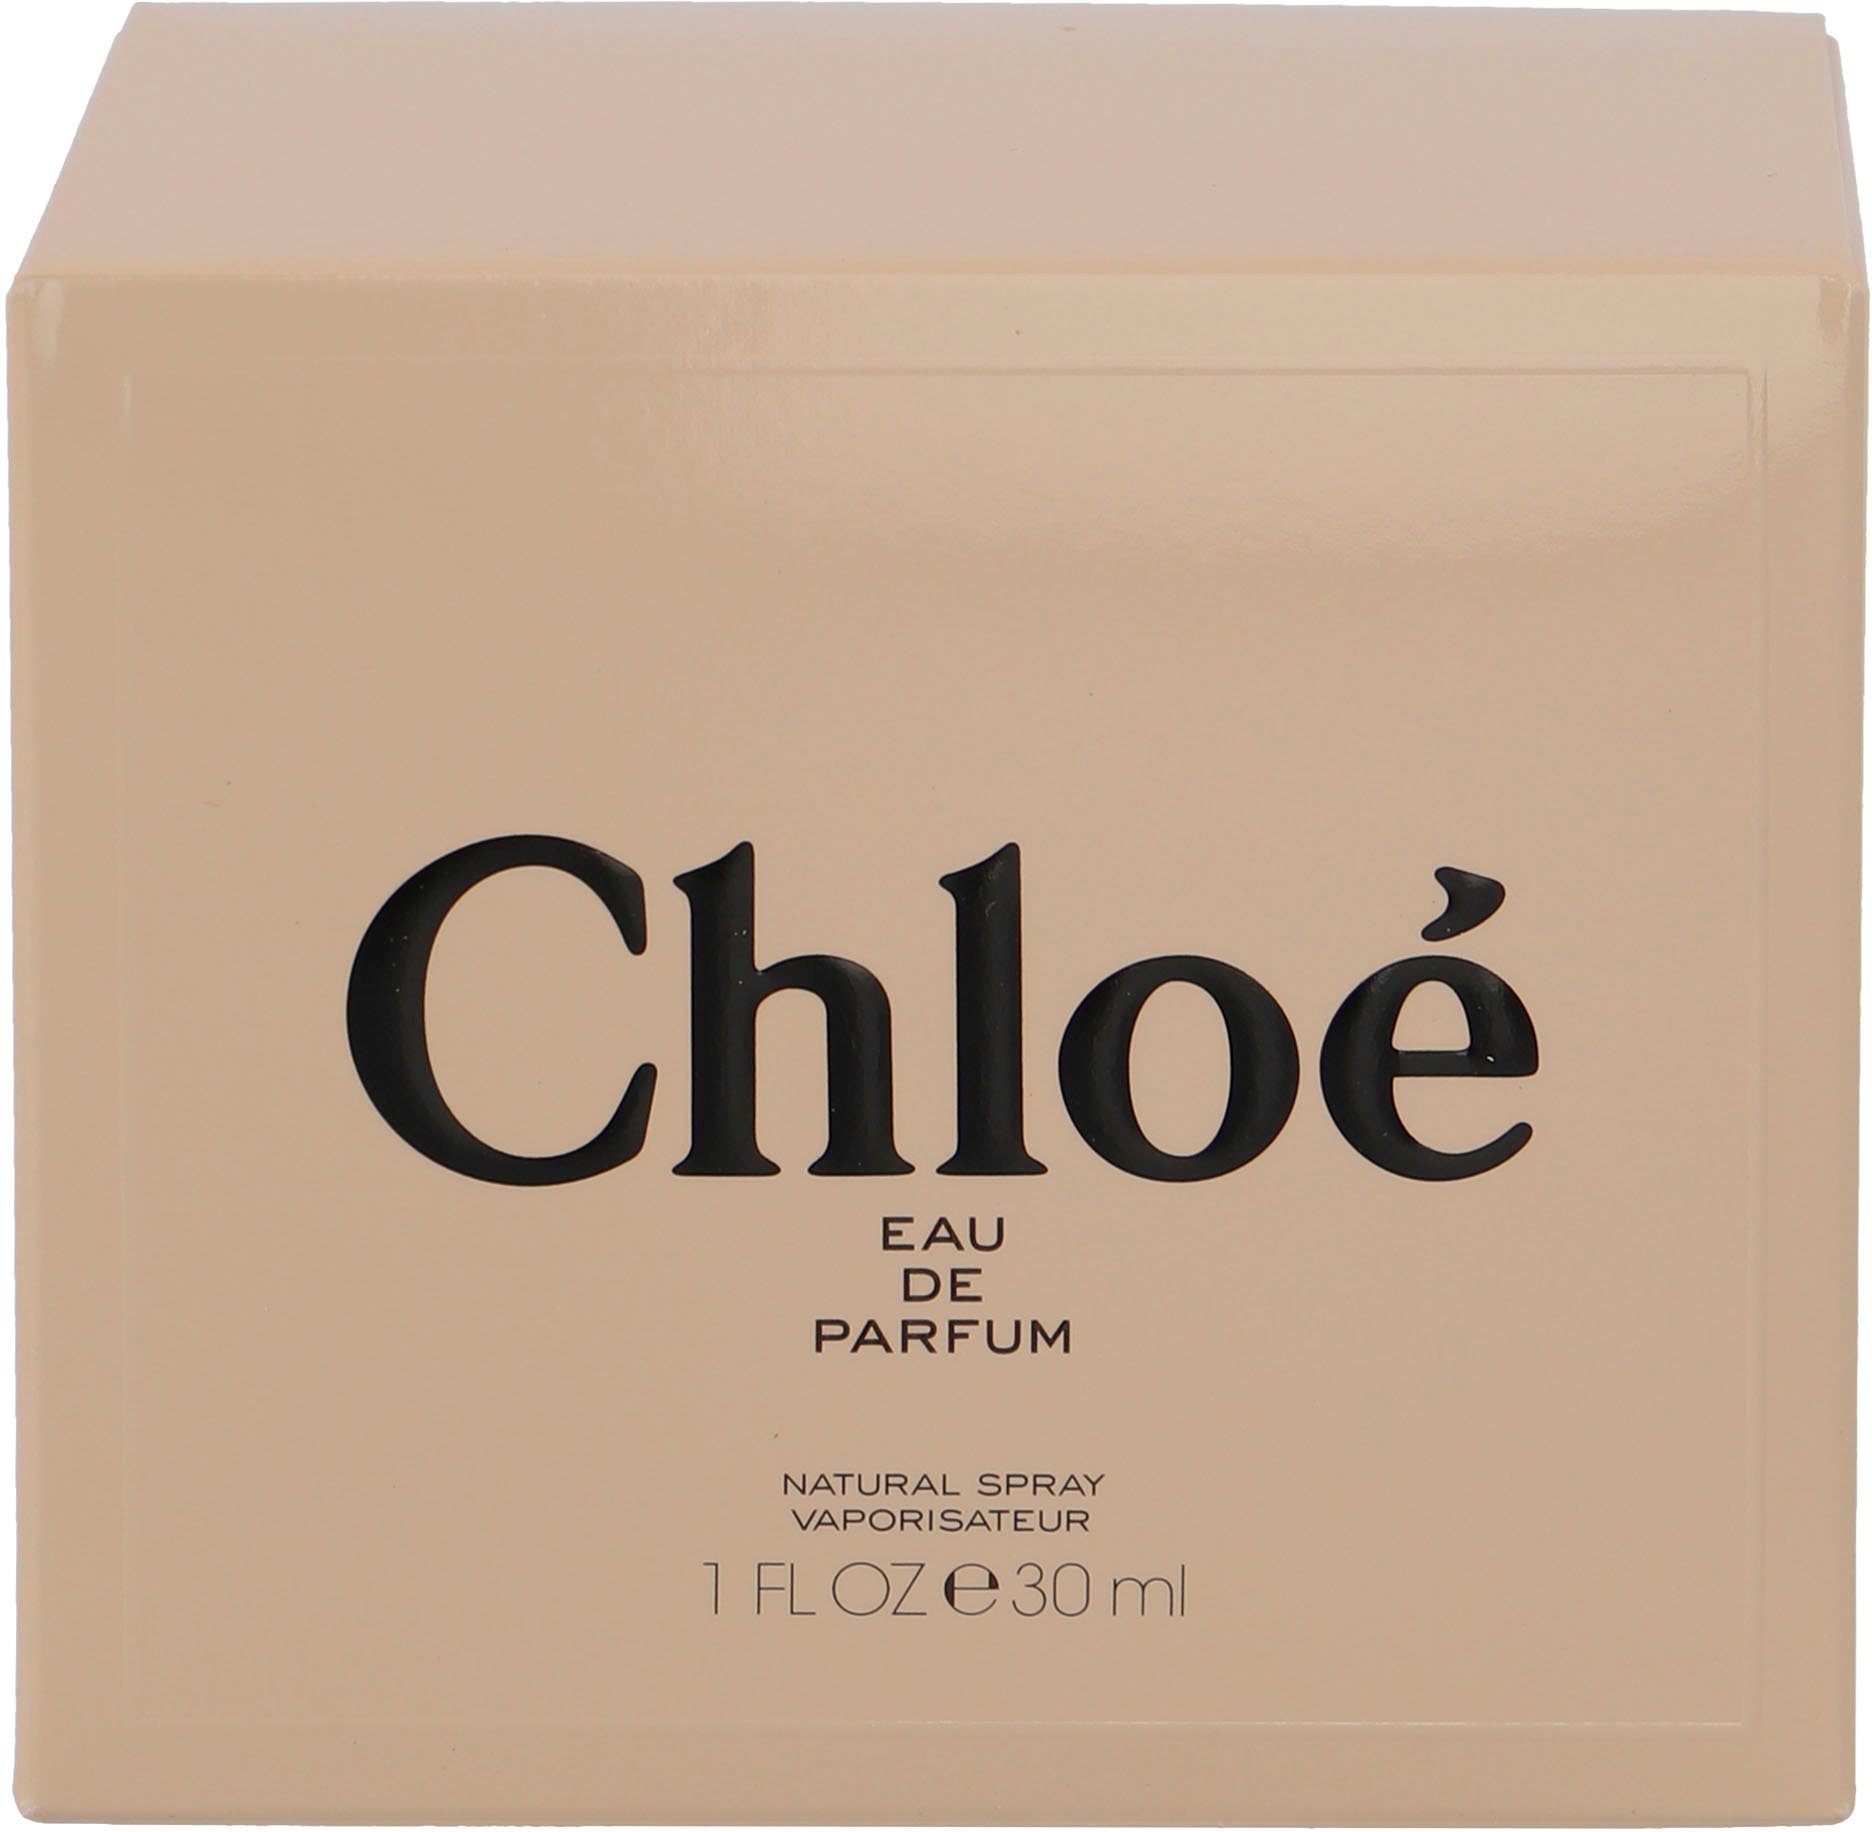 Signature Eau Chloé Parfum de Chloé